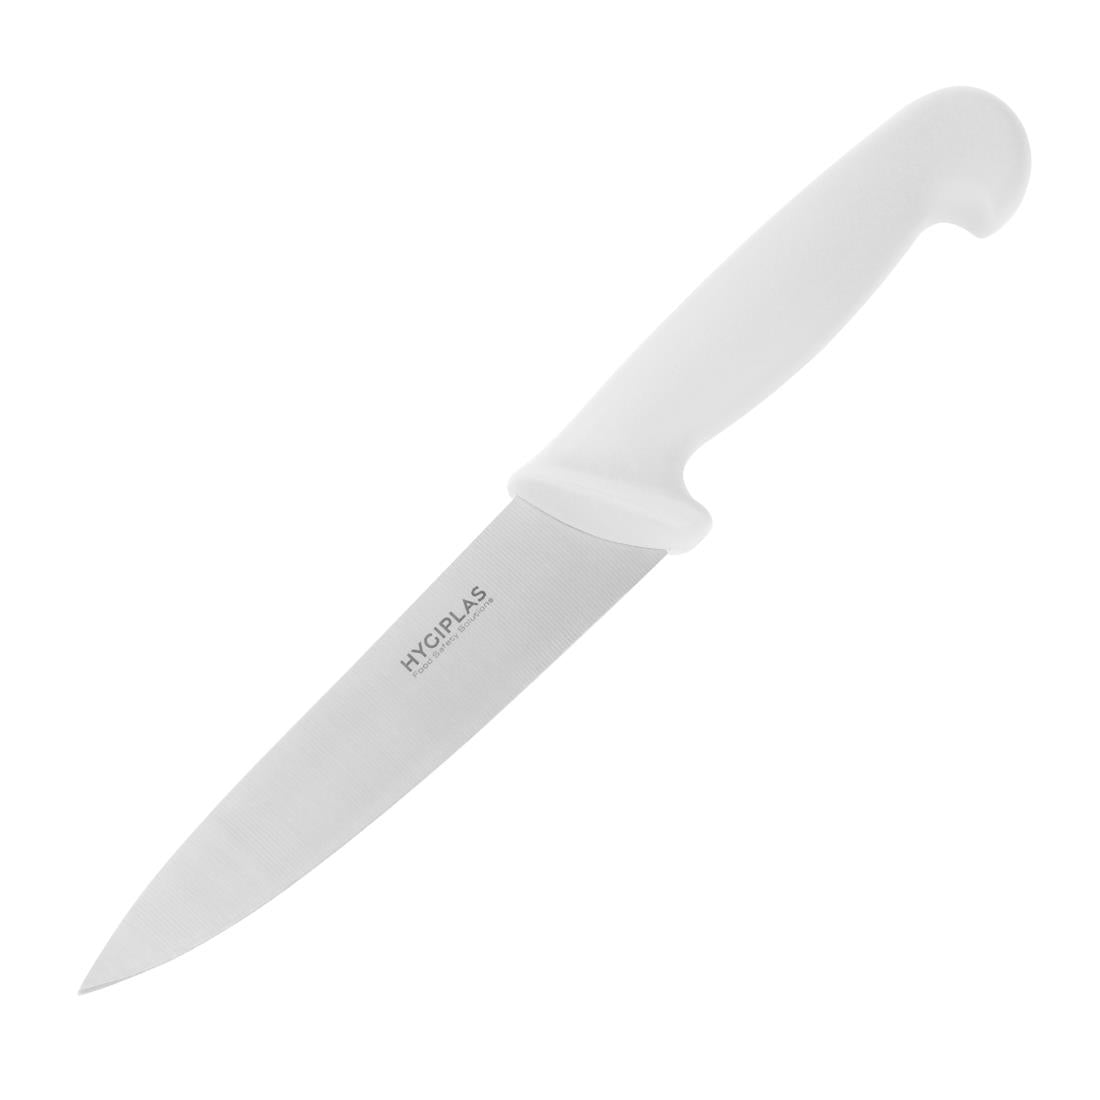 C871 Hygiplas Chefs Knife White 16cm JD Catering Equipment Solutions Ltd